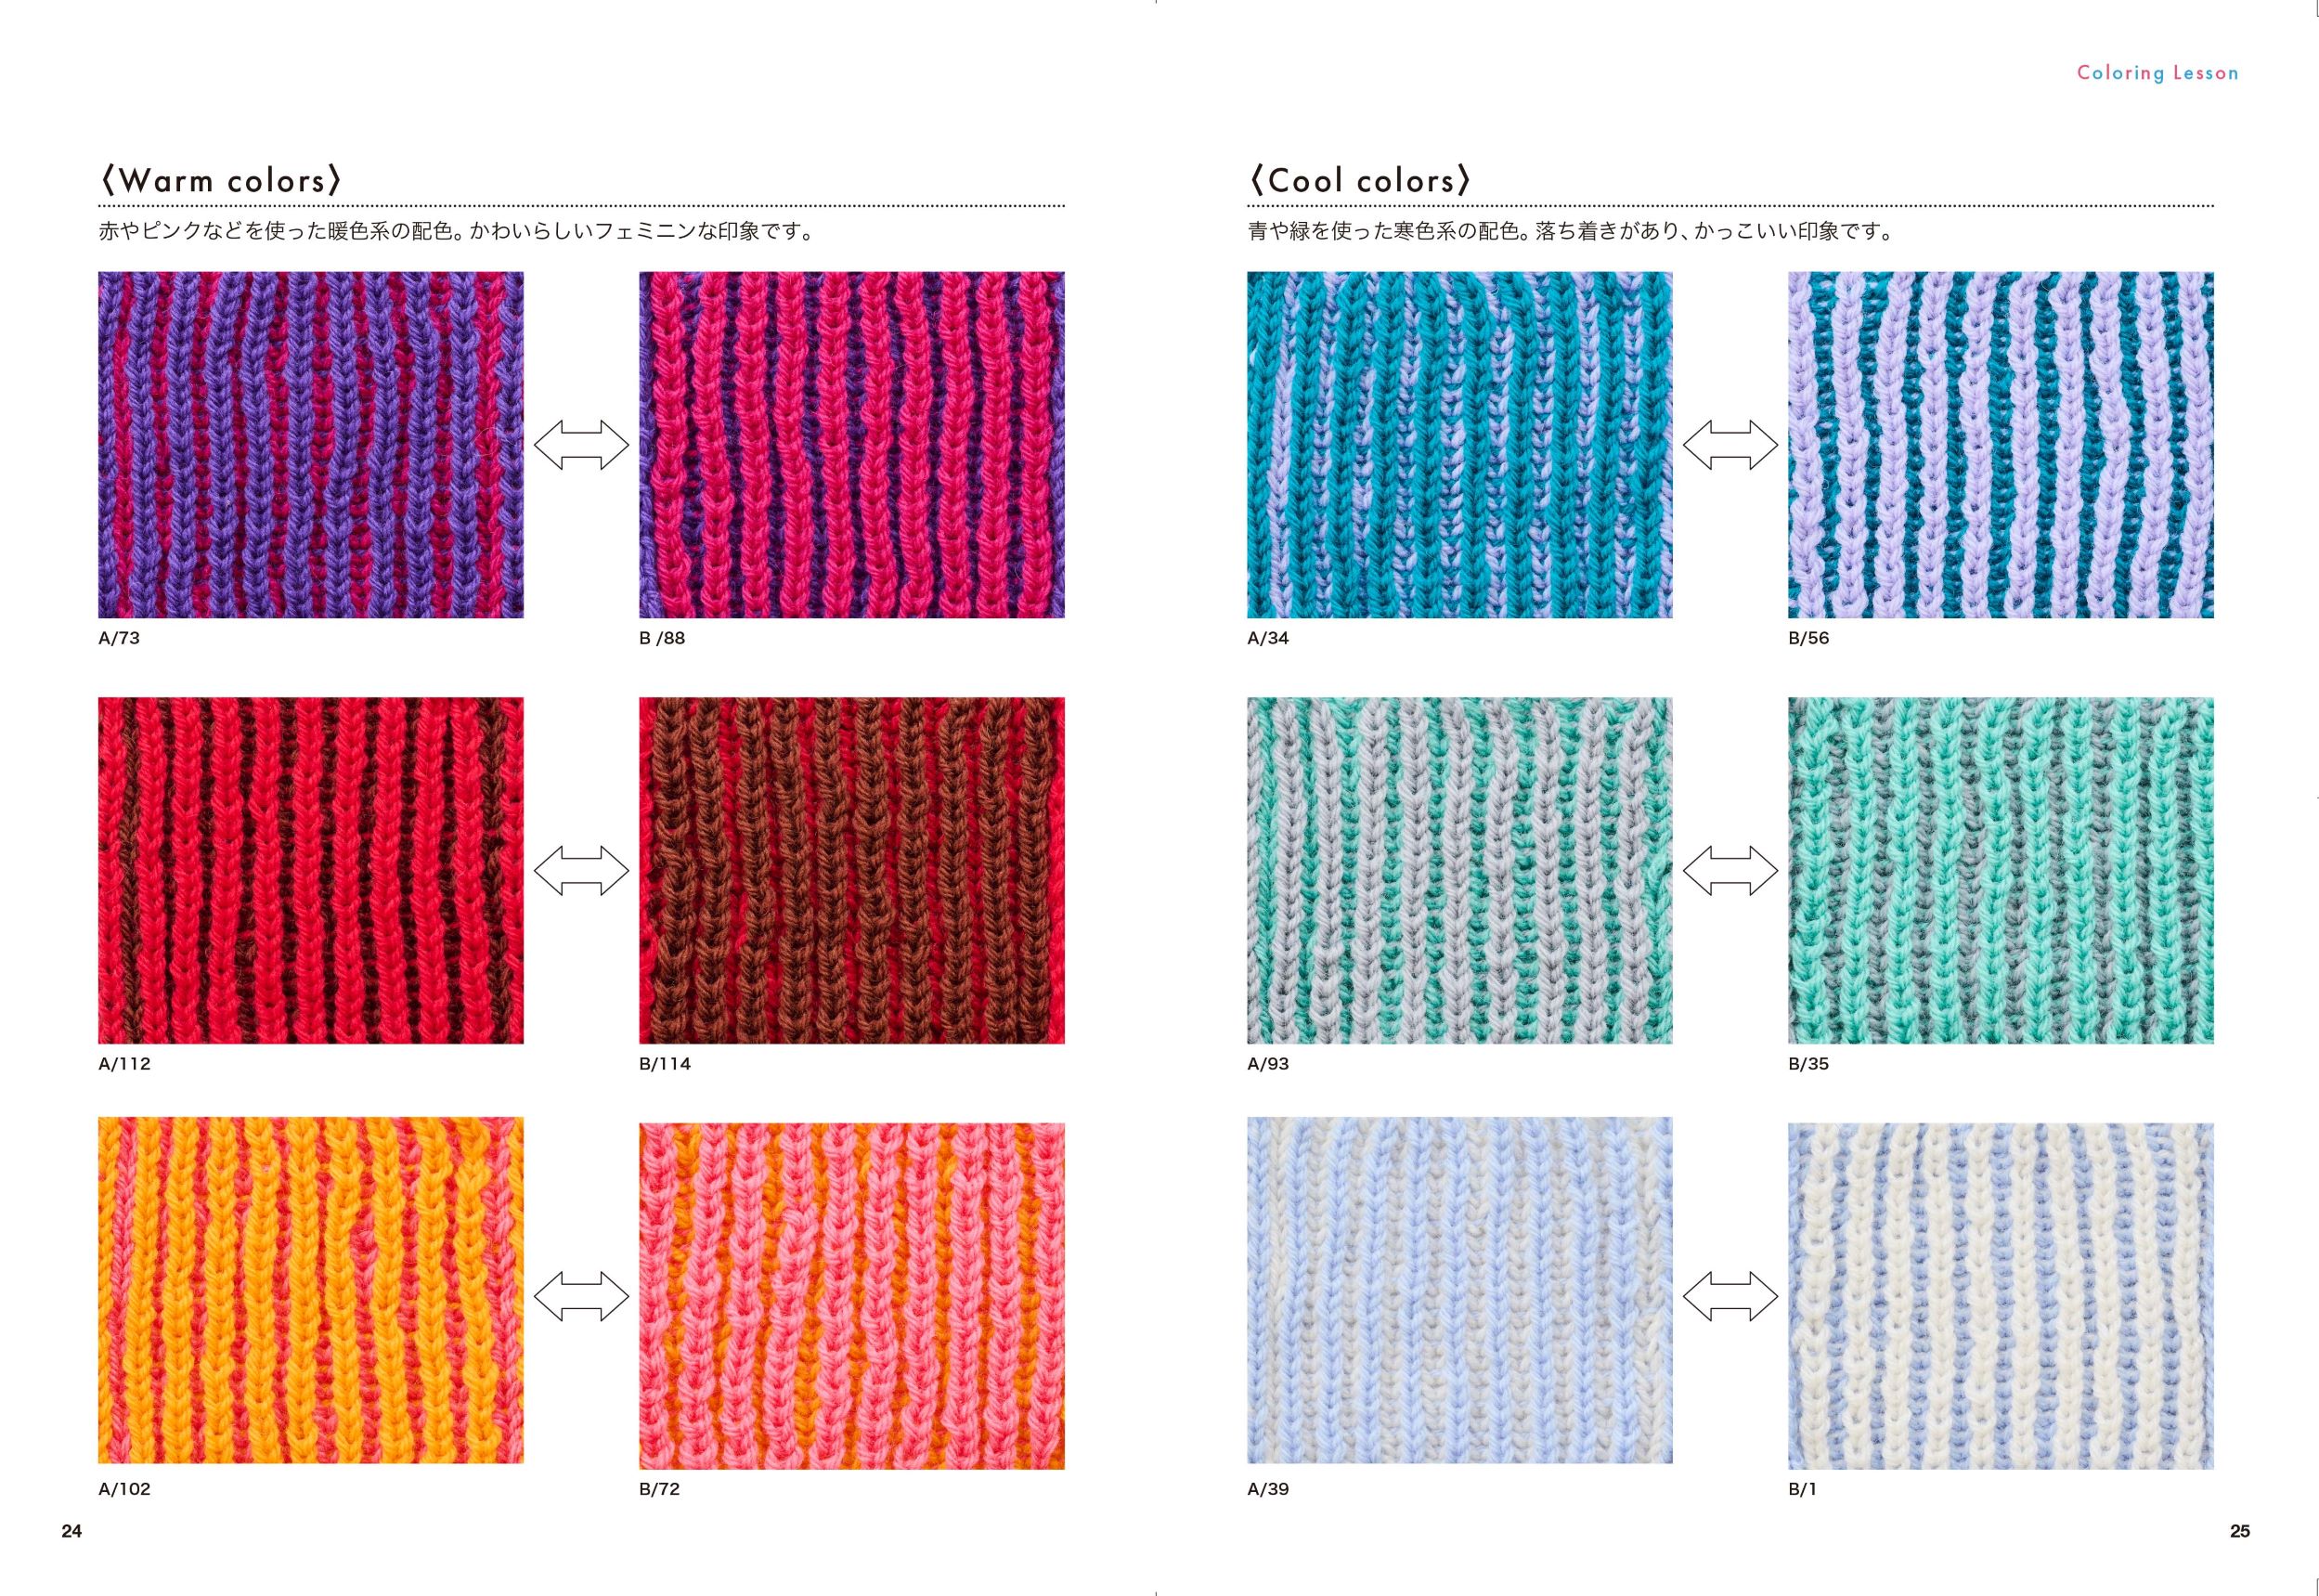 ベルンド・ケストラーのいちばんわかりやすいブリオッシュ編み